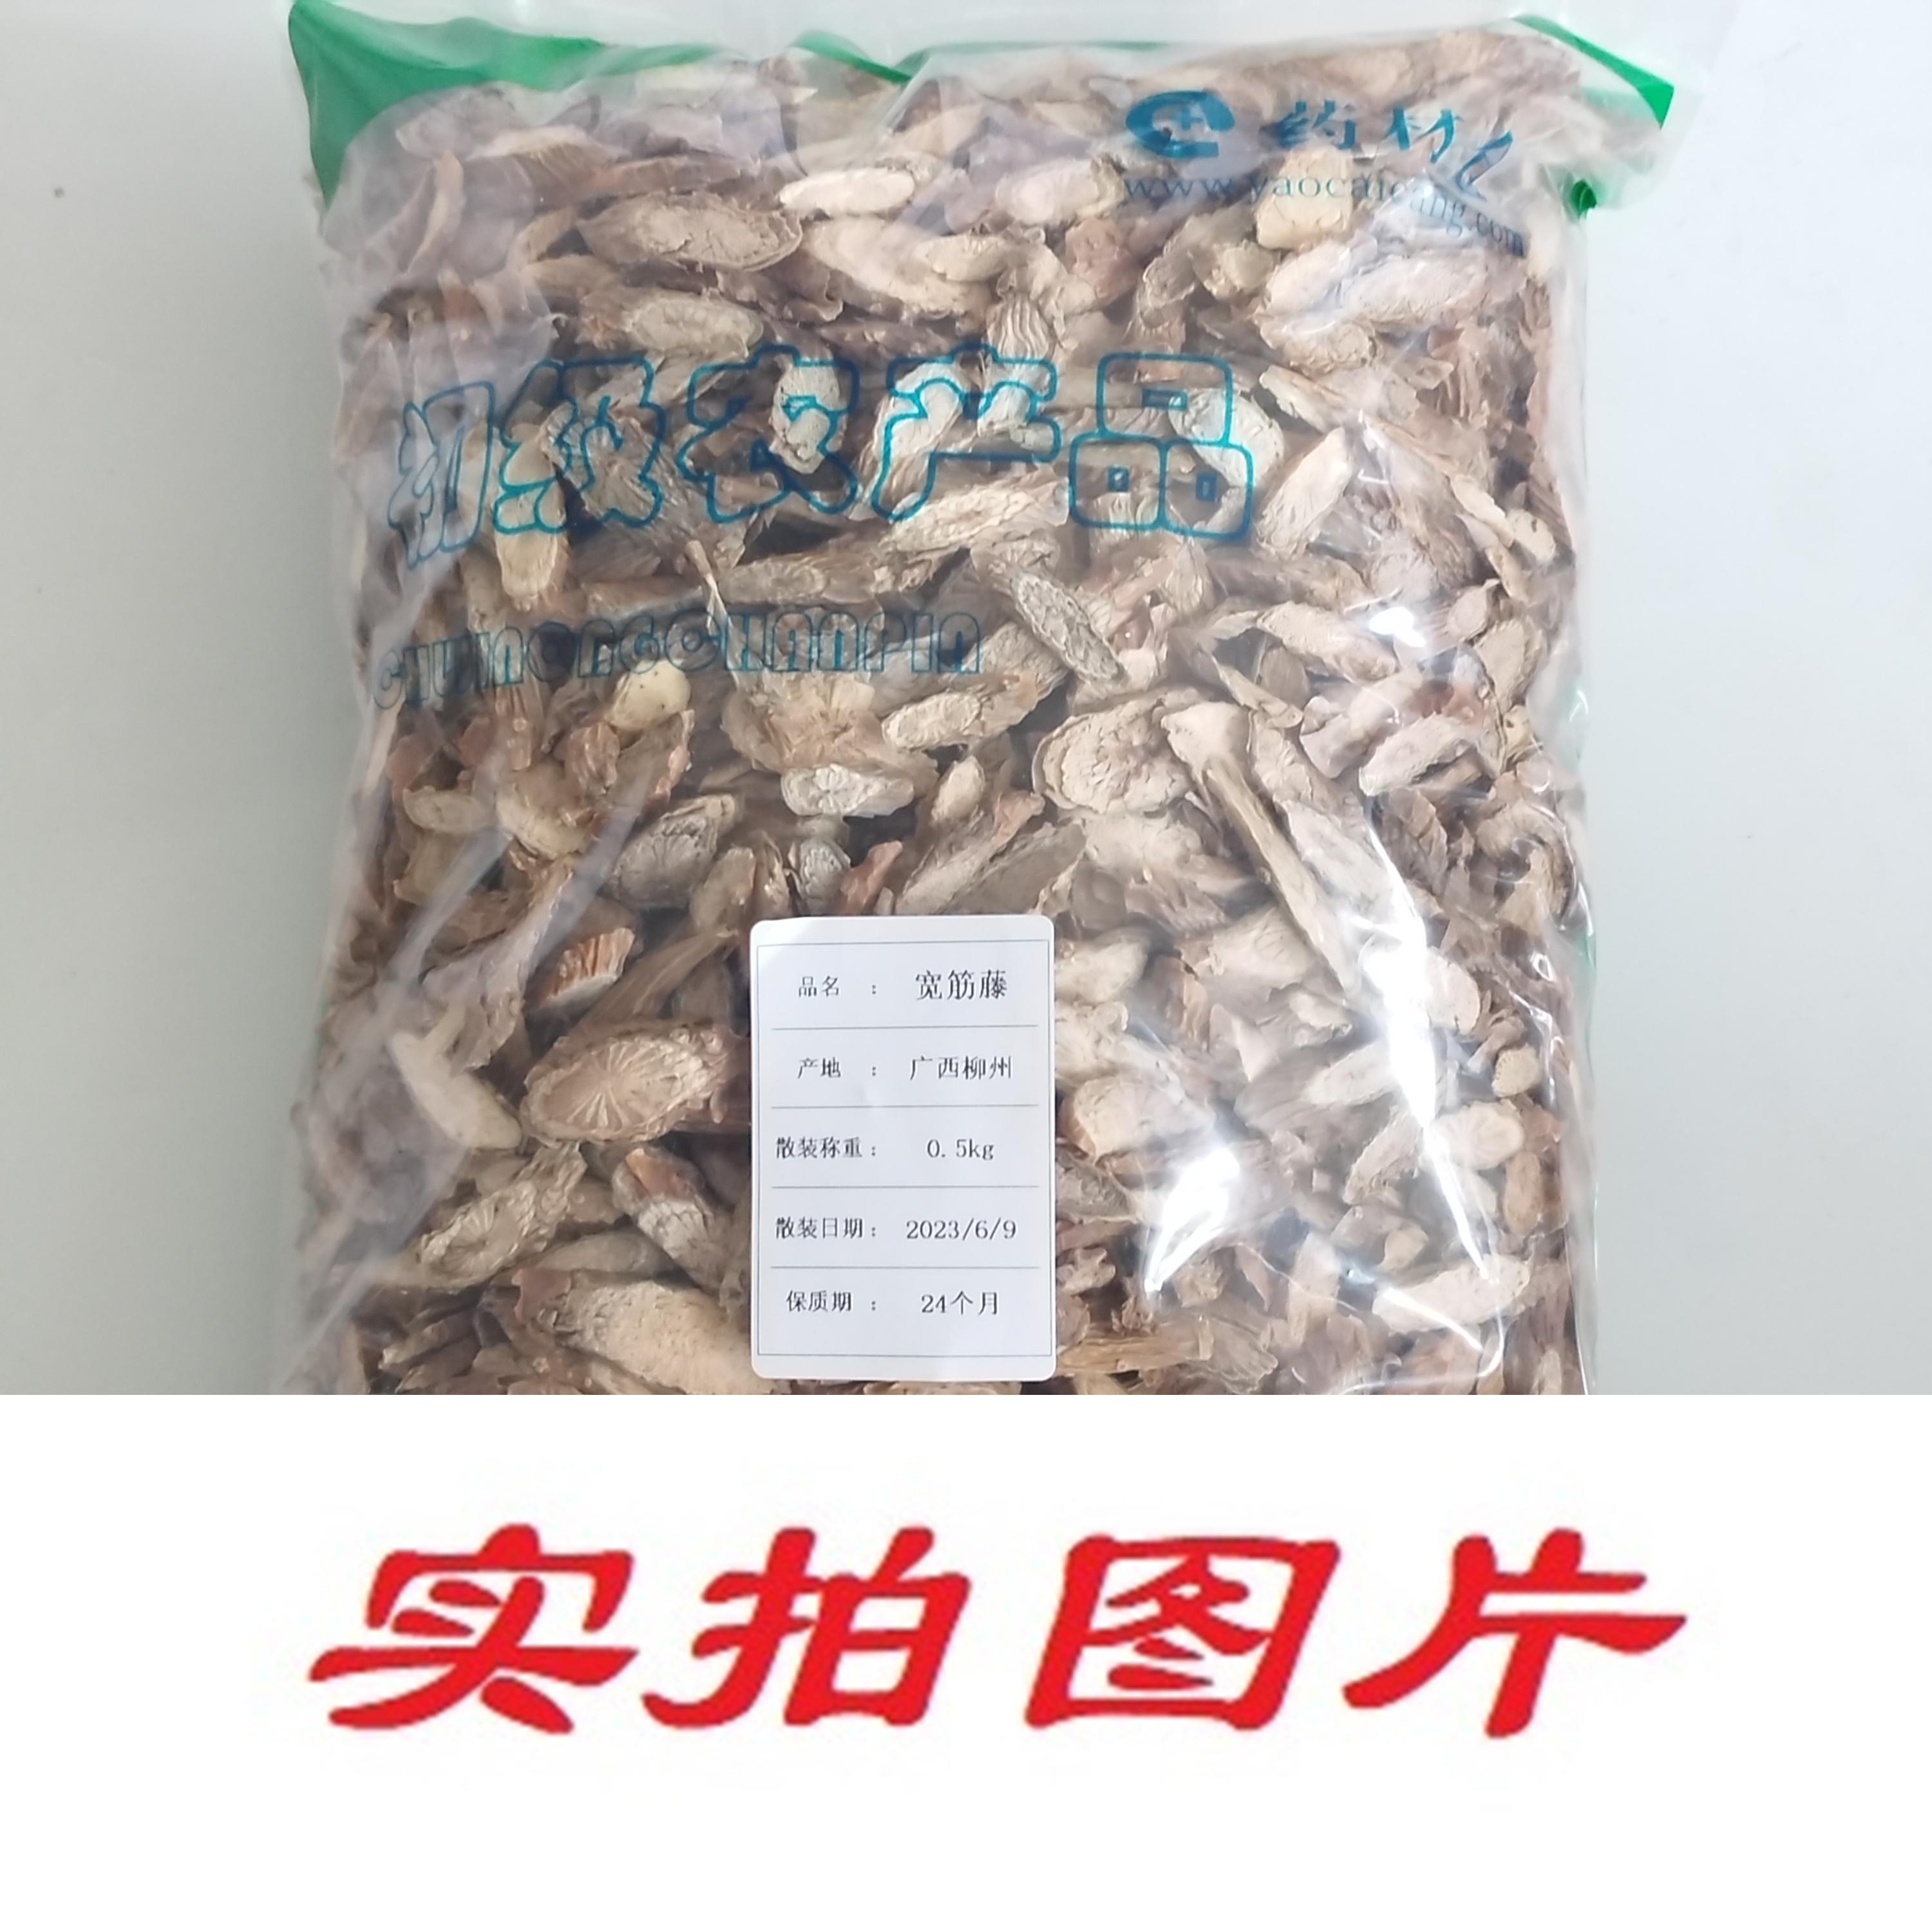 【】宽筋藤0.5kg-农副产品